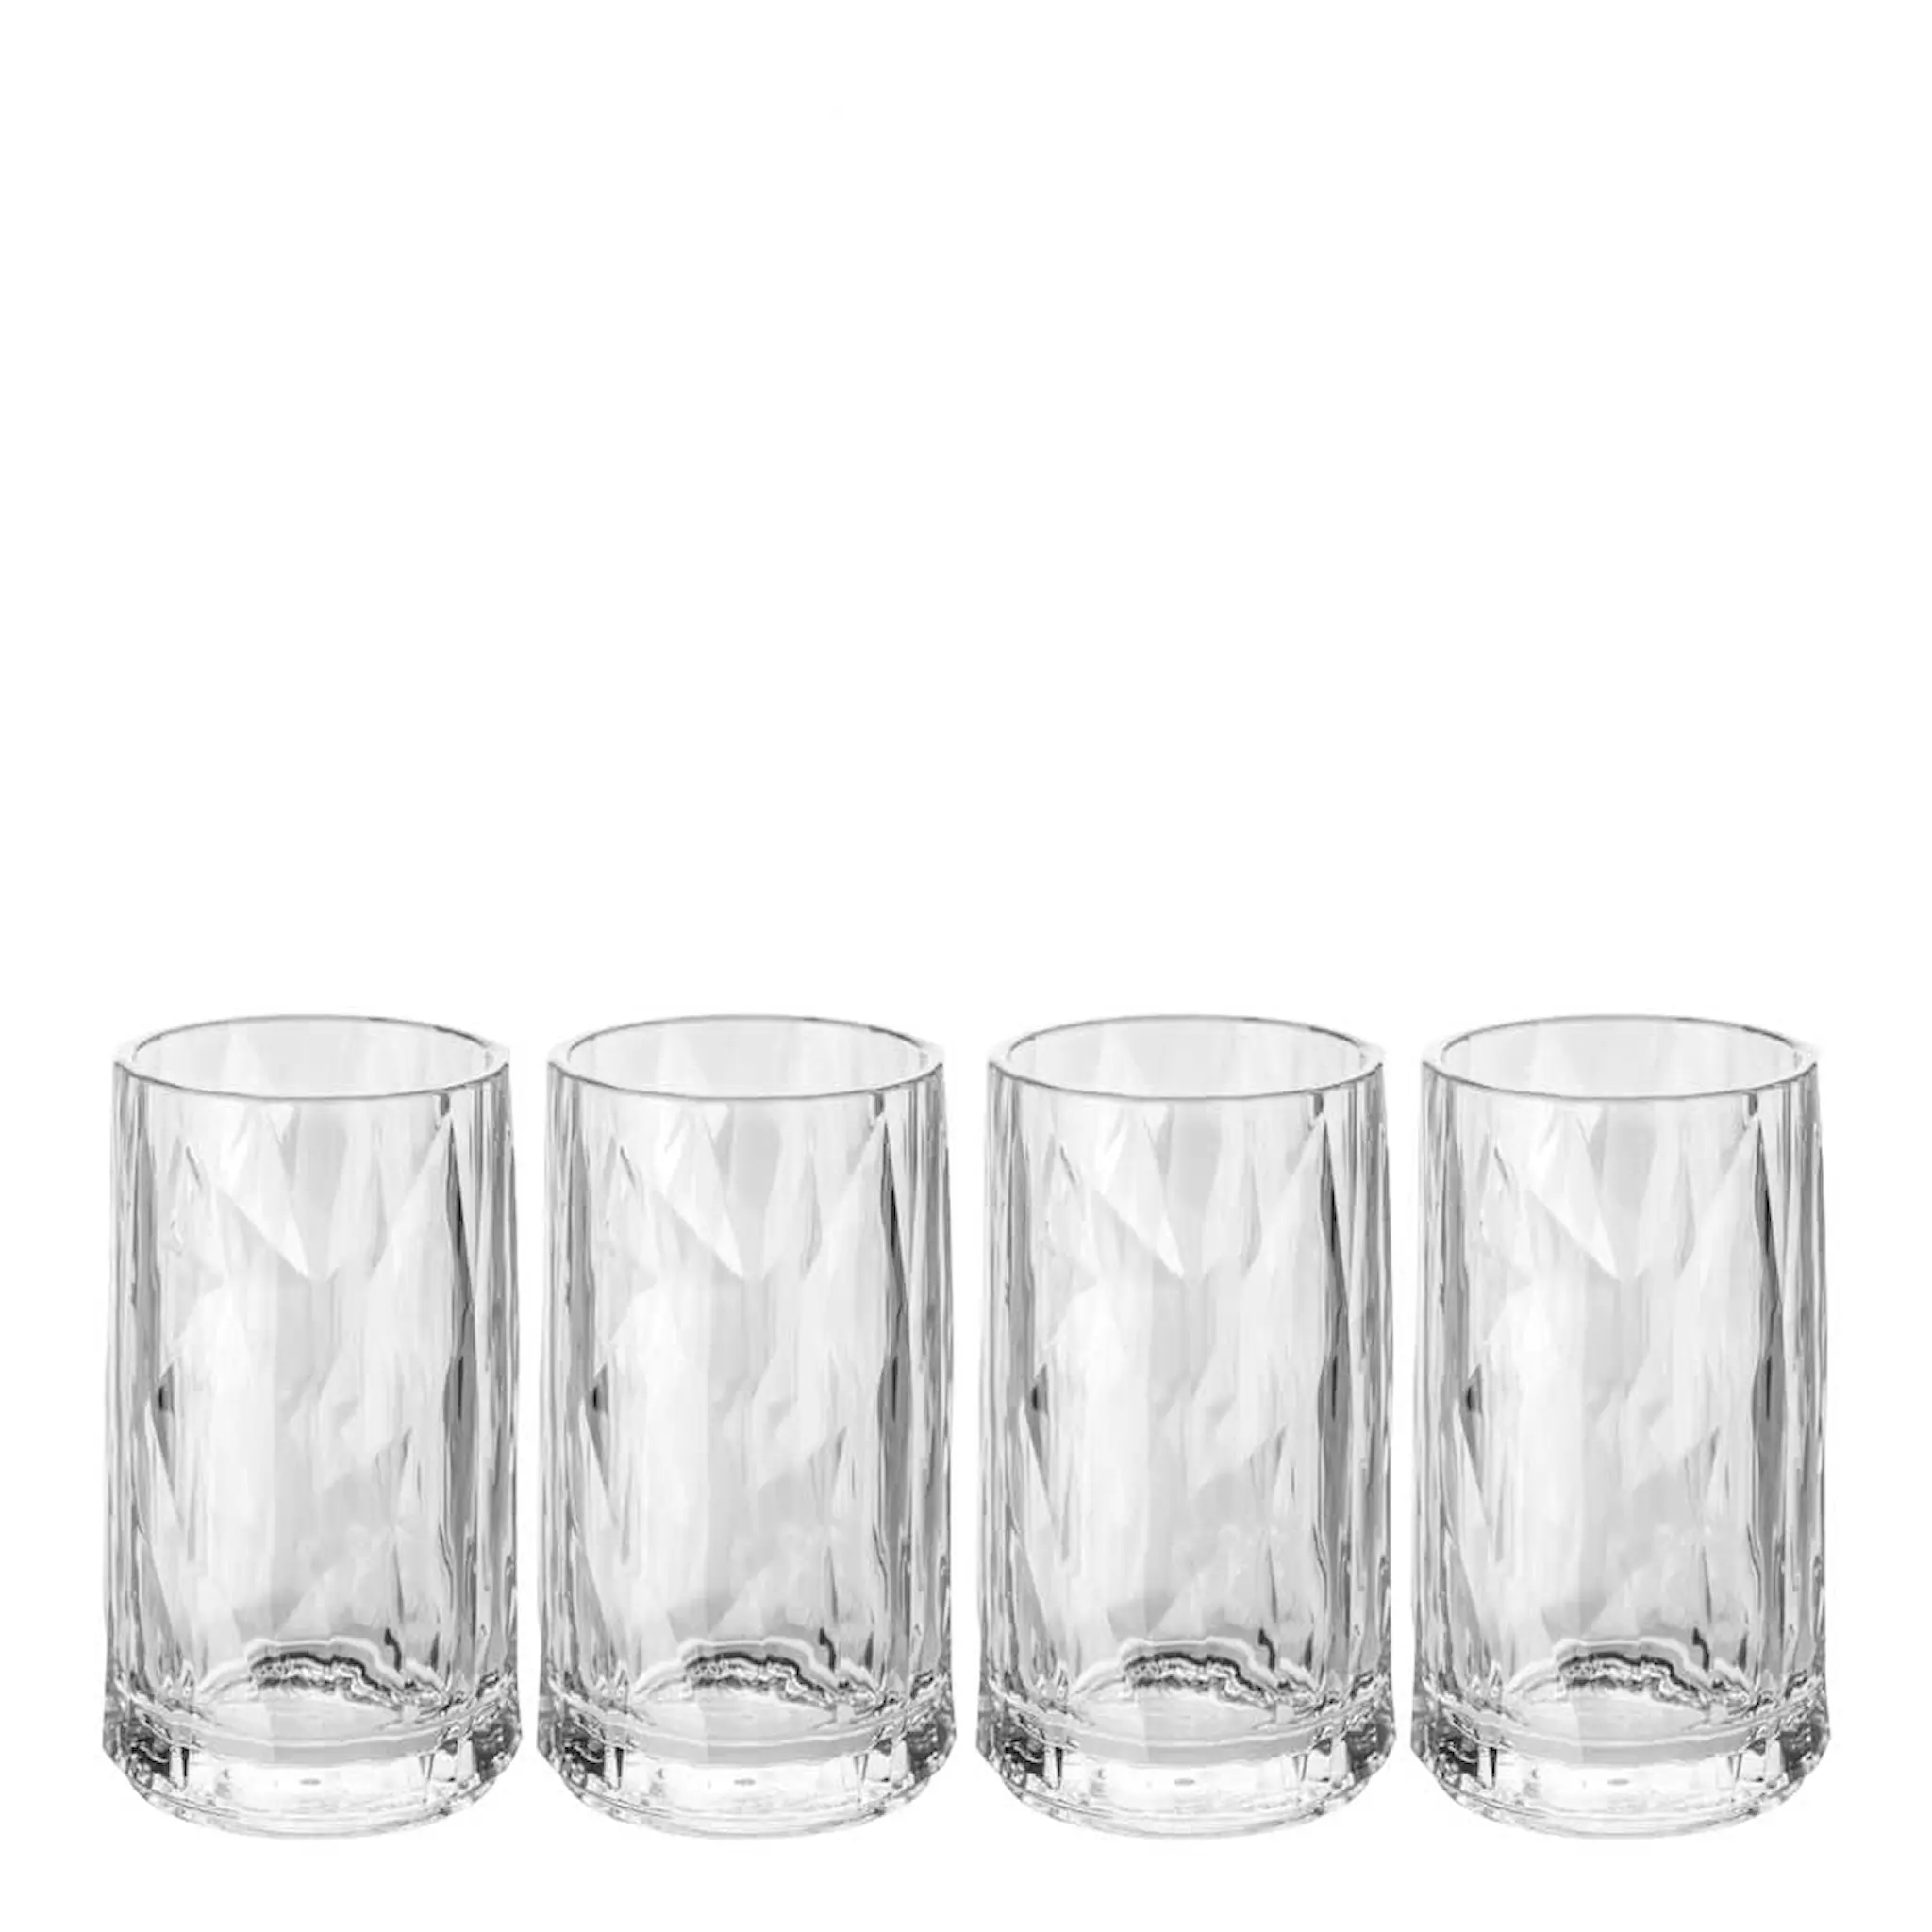 Koziol Club snapsglass / shotglass 40 ml 4 stk klar